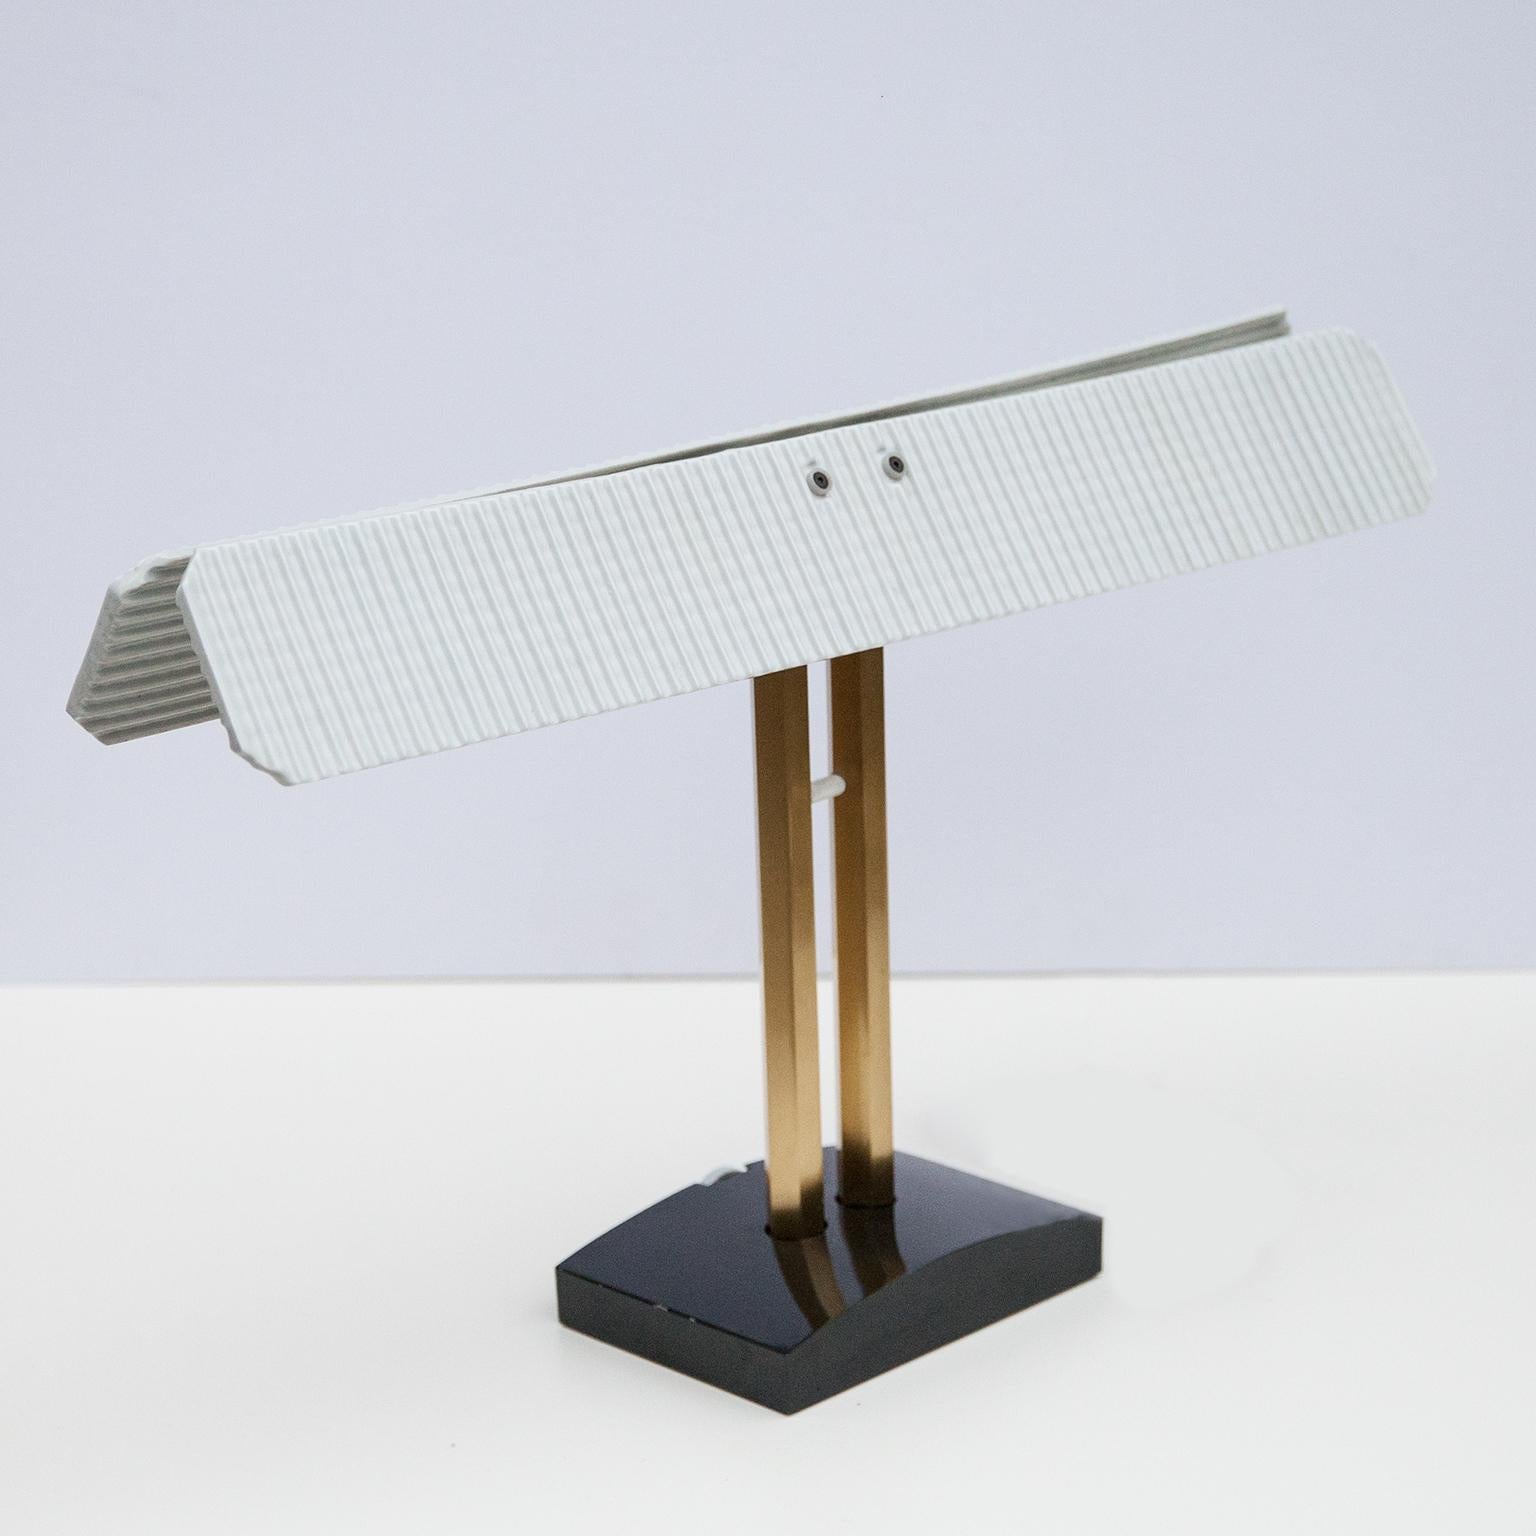 Très rare lampe de table Capalonga conçue par Afra & Toba Scarpa, fabriquée par Flos, Italie 1982. La lampe de table est dotée d'un socle en métal peint en noir et d'un variateur d'intensité on/off en porcelaine blanche attenant.

Les barres